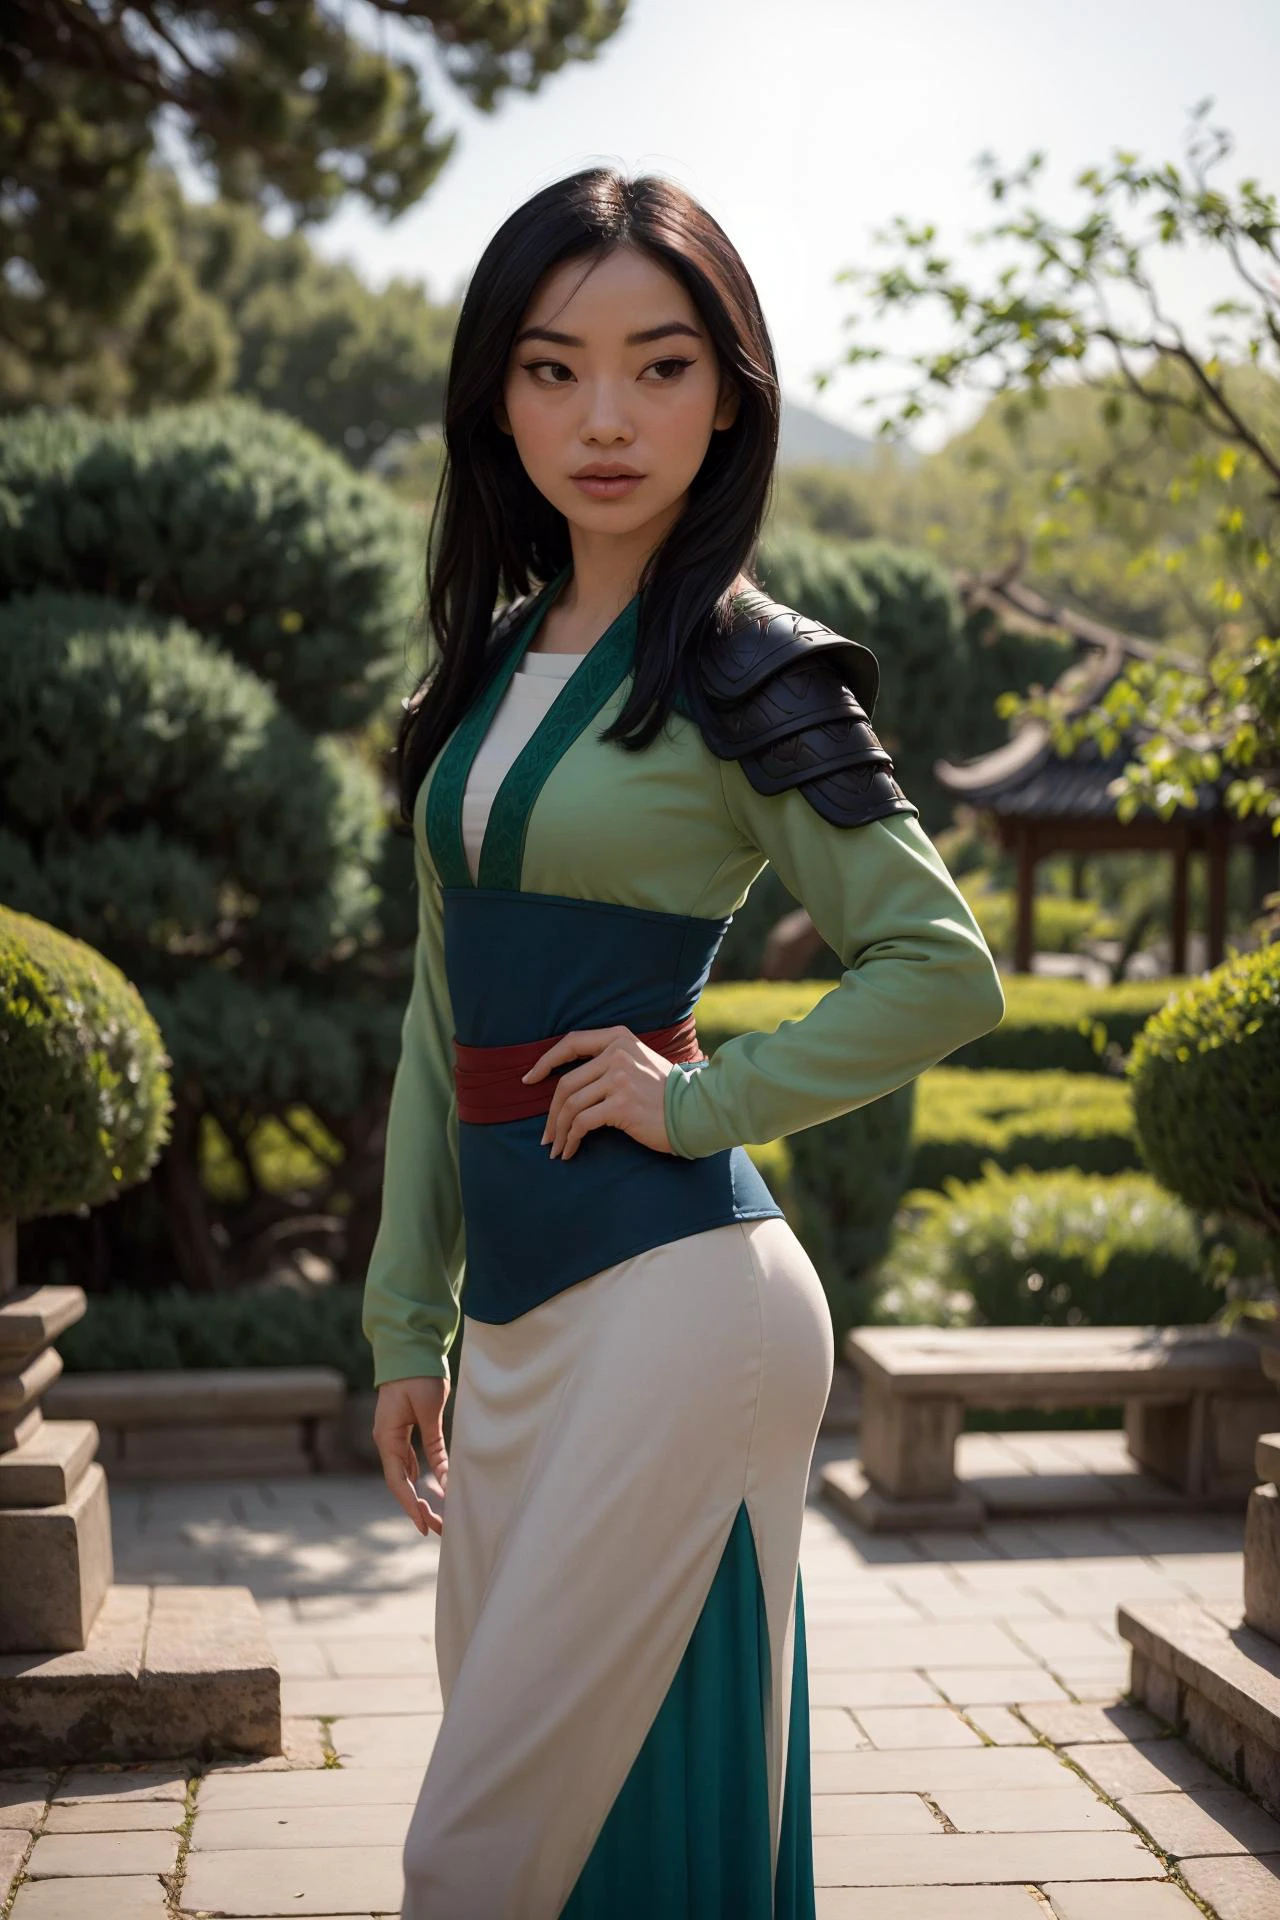 foto de Mulan, uma linda mulher, (magrelo:1.2), ajustar, pele perfeita, cabelo detalhado, rosto detalhado, olhos lindos,
((armadura lamelar Tang pesada verde sexy)),
(fundo desfocado do jardim de Suzhou, cênico), (pose sexy em pé), (Vista da frente),
Erótico, elegante, Sensual, sedutor, (Obra de arte, melhor qualidade), (fotorrealista:1.4), corpo todo, iluminação perfeita, (melhor sombra),
mulanwaifu, 